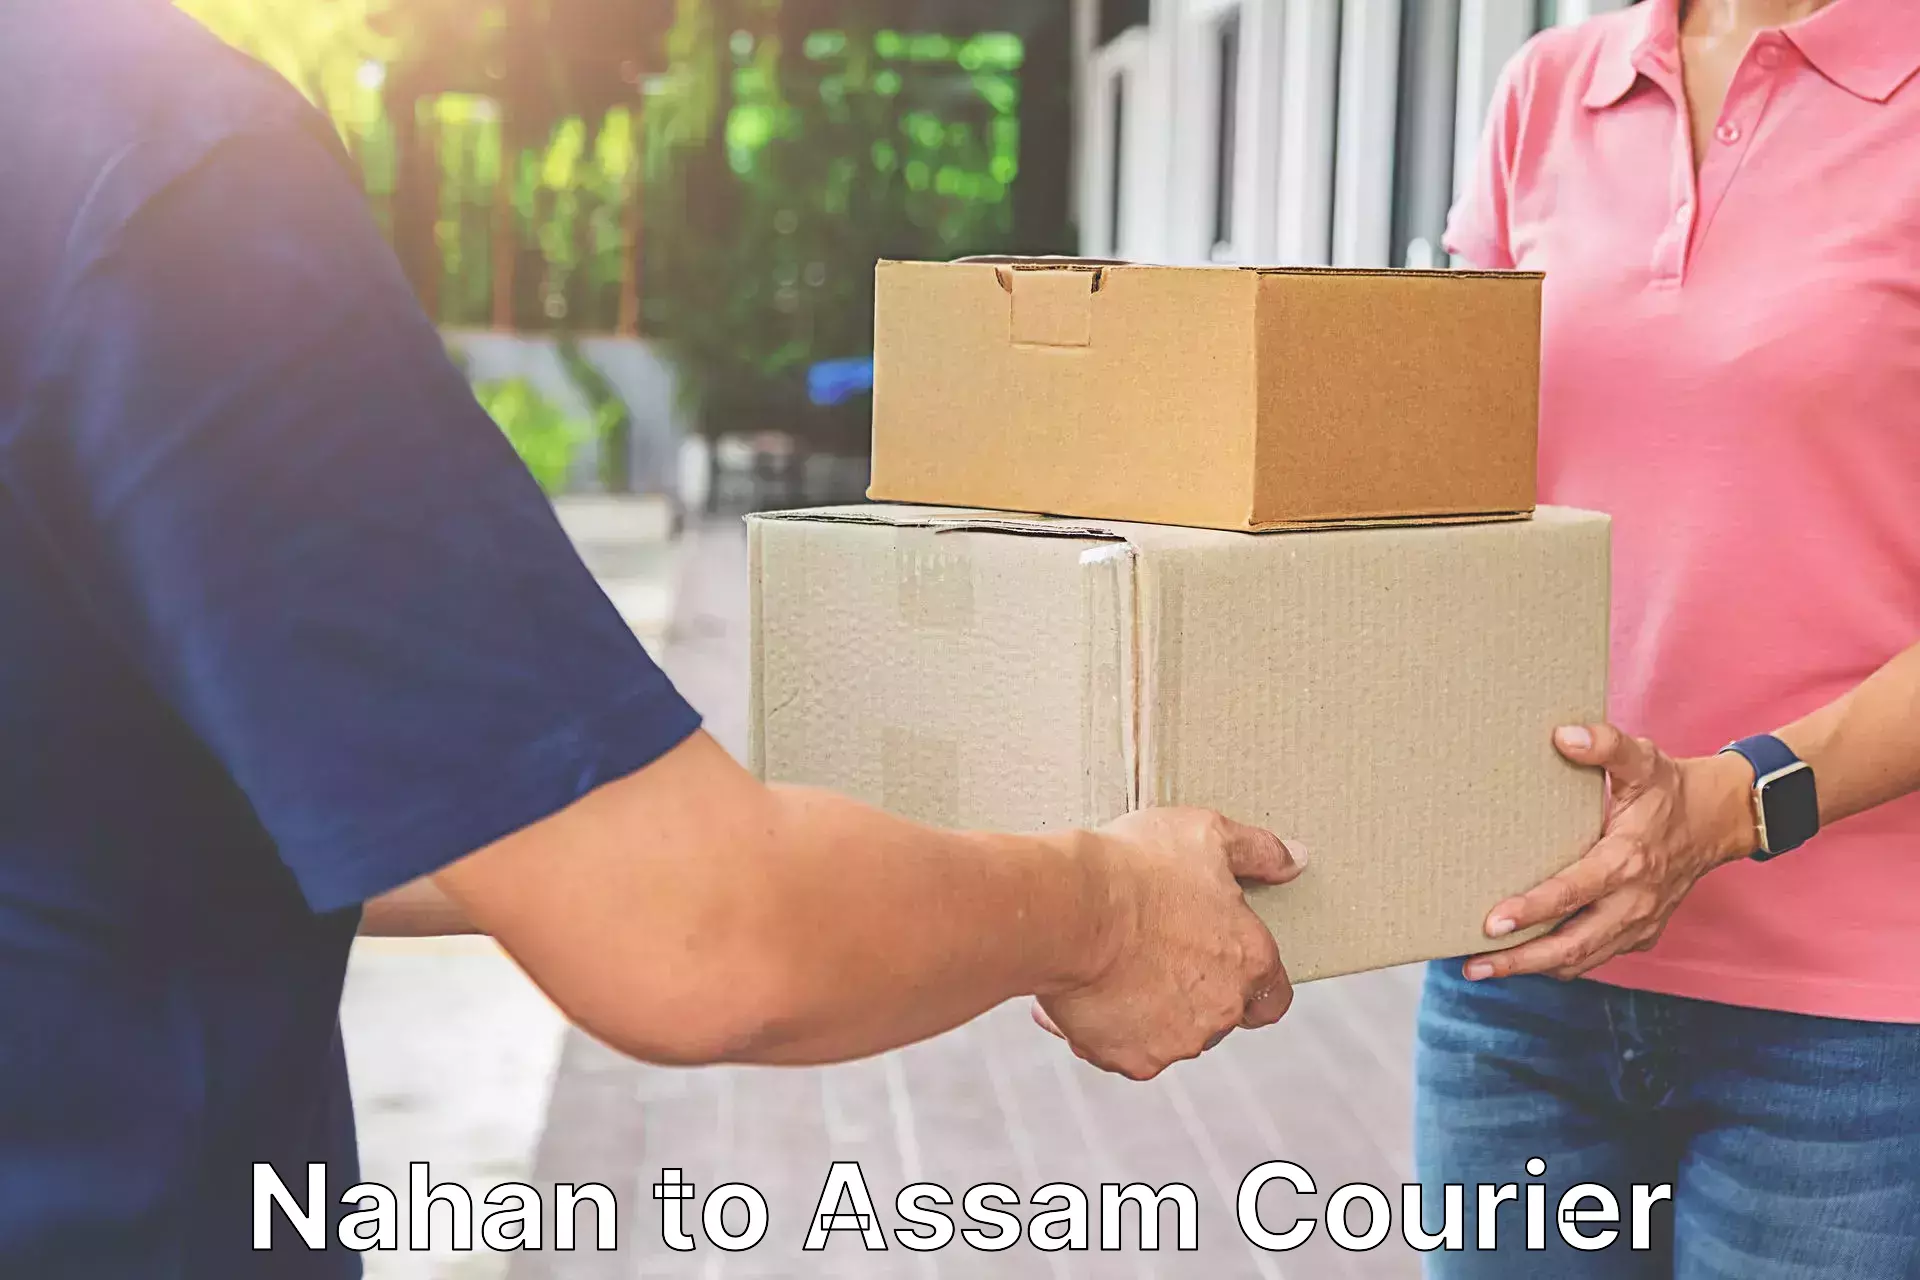 Courier service comparison Nahan to Agomani